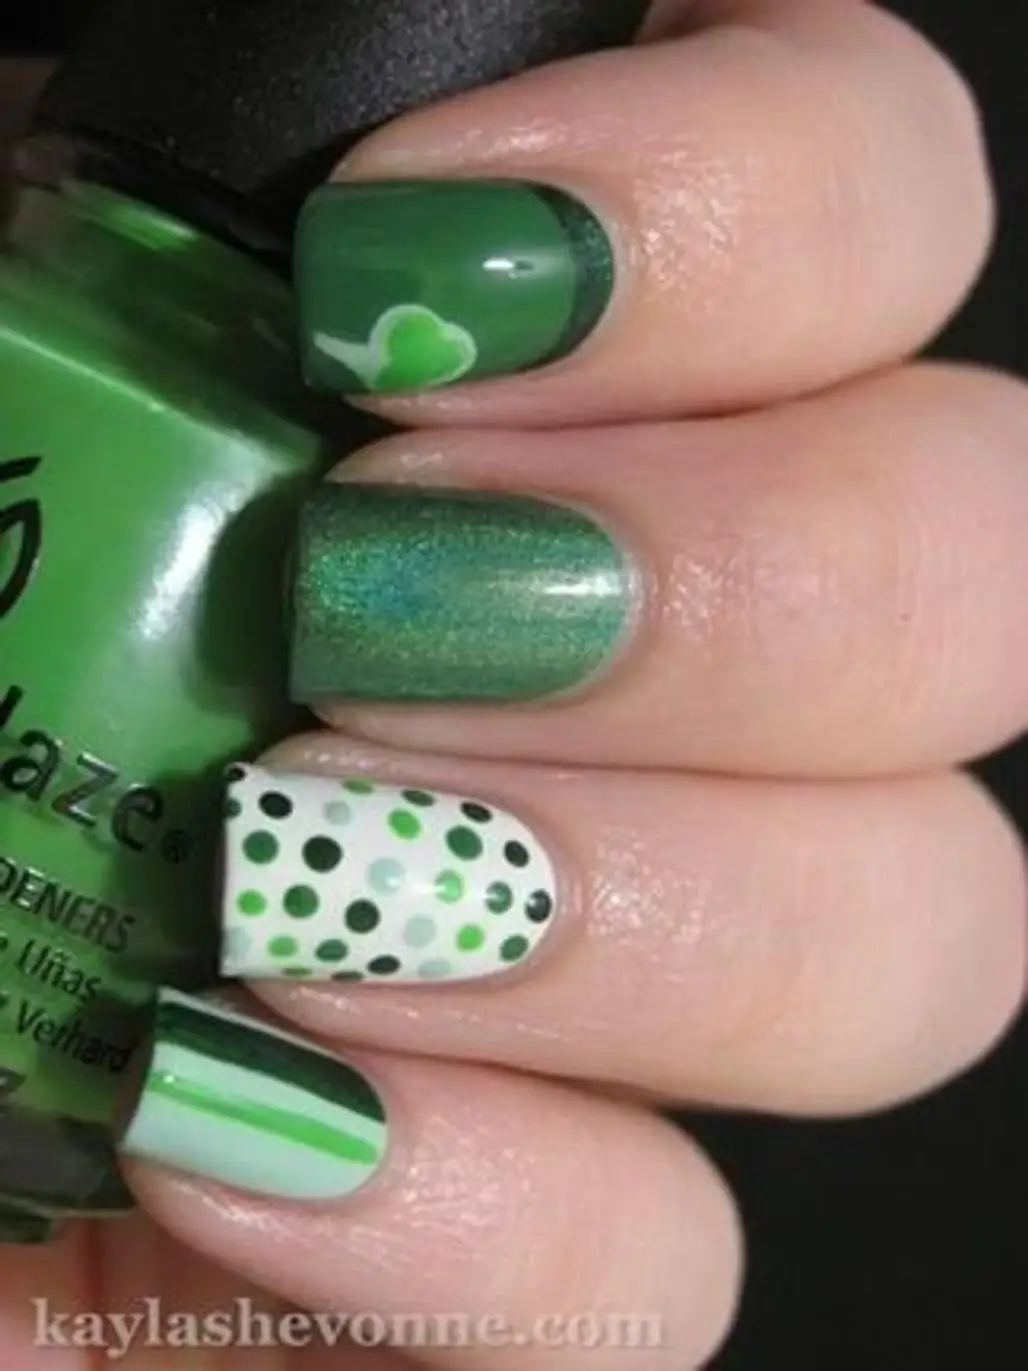 color,green,finger,nail,nail care,